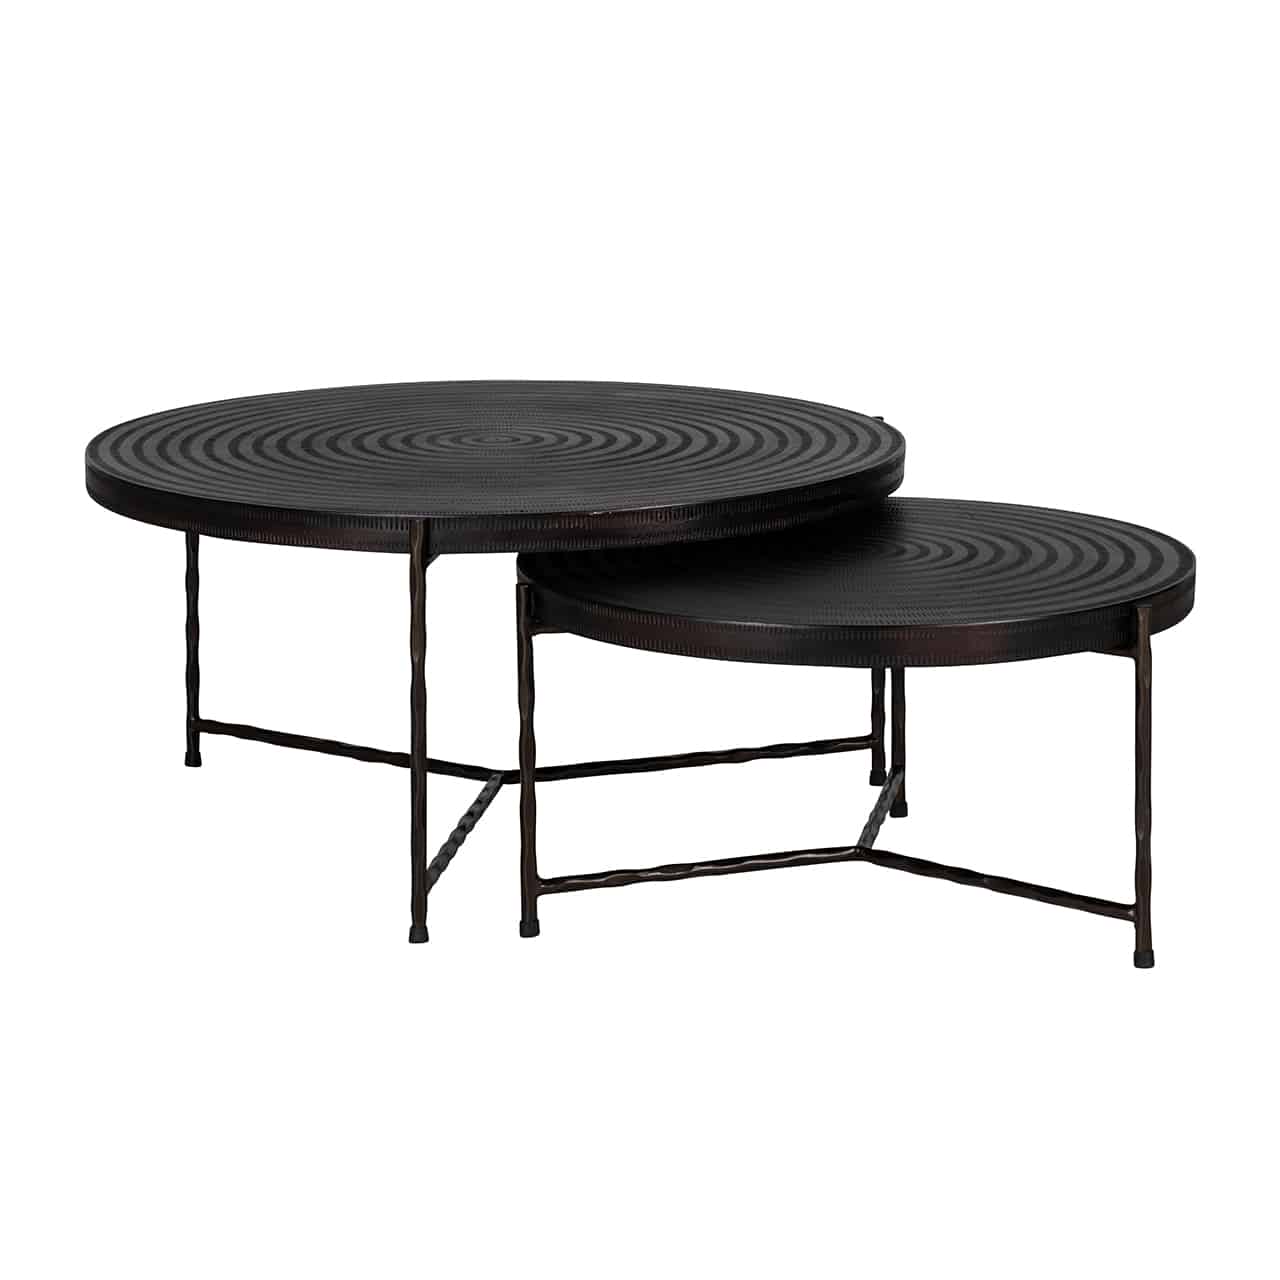 Zwei verschieden große, runde Couchtische jeweils auf drei Beinen, durch Y-förmige Metallstreben stabilisiert, die Tische sind zum Teil ineinandergeschoben; die schwarzen Tischplatten aus Aluminium sind mit ringförmigen Prägungen versehen.